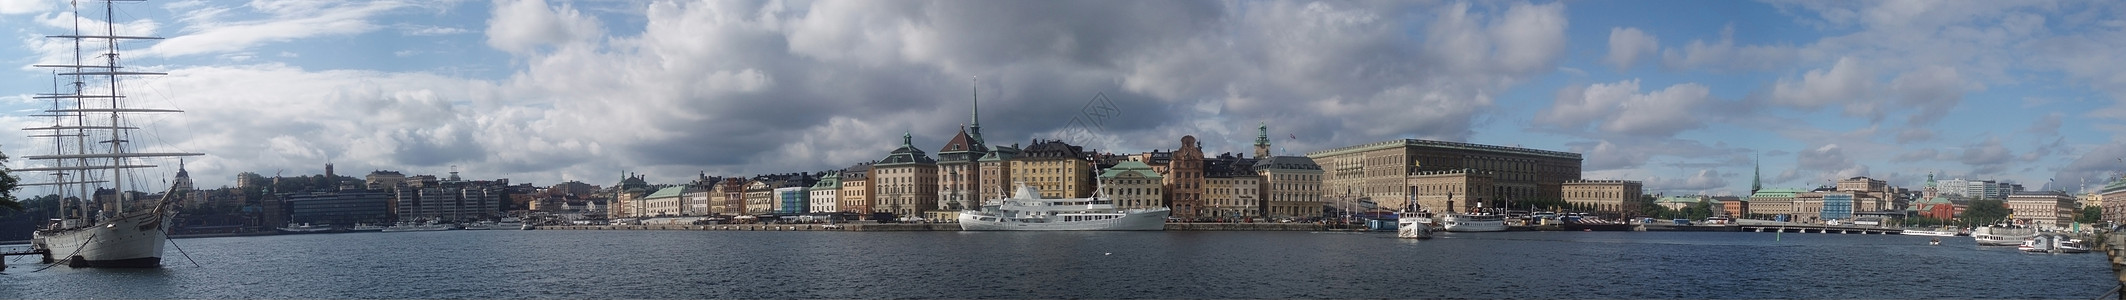 斯德哥尔摩 中心全景观光图片